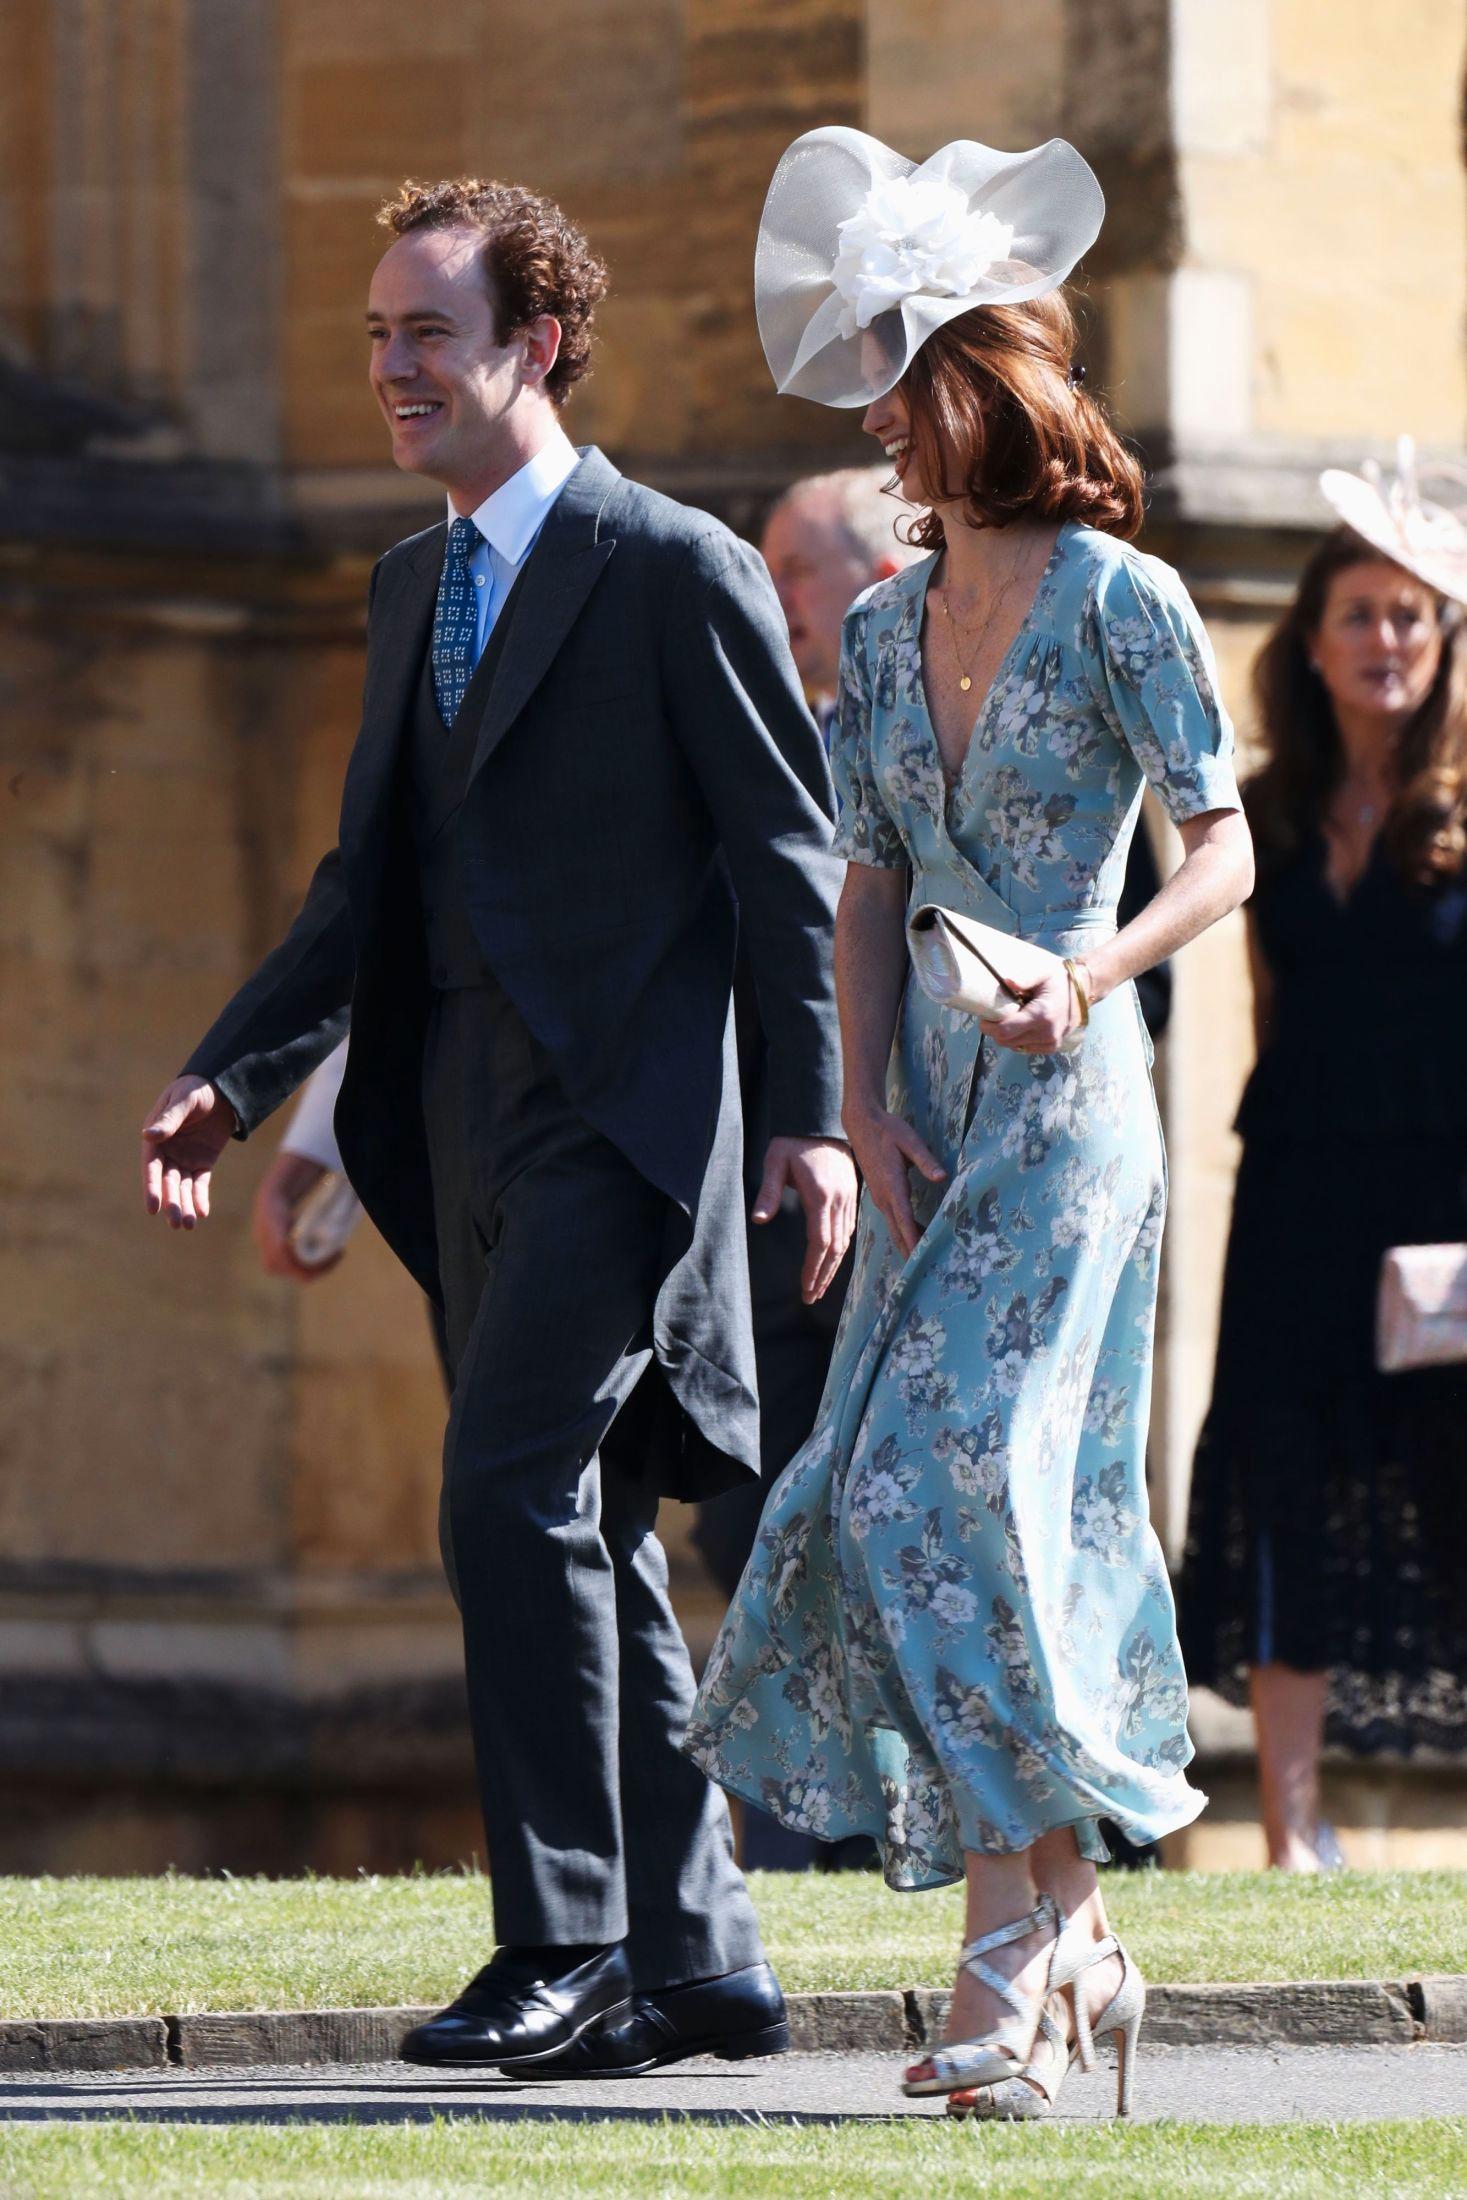 GLITRET: Tom Inskip, prins Harrys gode venn, og hans kone Lara Inskip på vei inn i vielsen. Han hadde på seg sjakett, og hun hadde en blomstrede omslagskjole stylet med åpne, glitrende sko. Foto: Chris Jackson/AFP